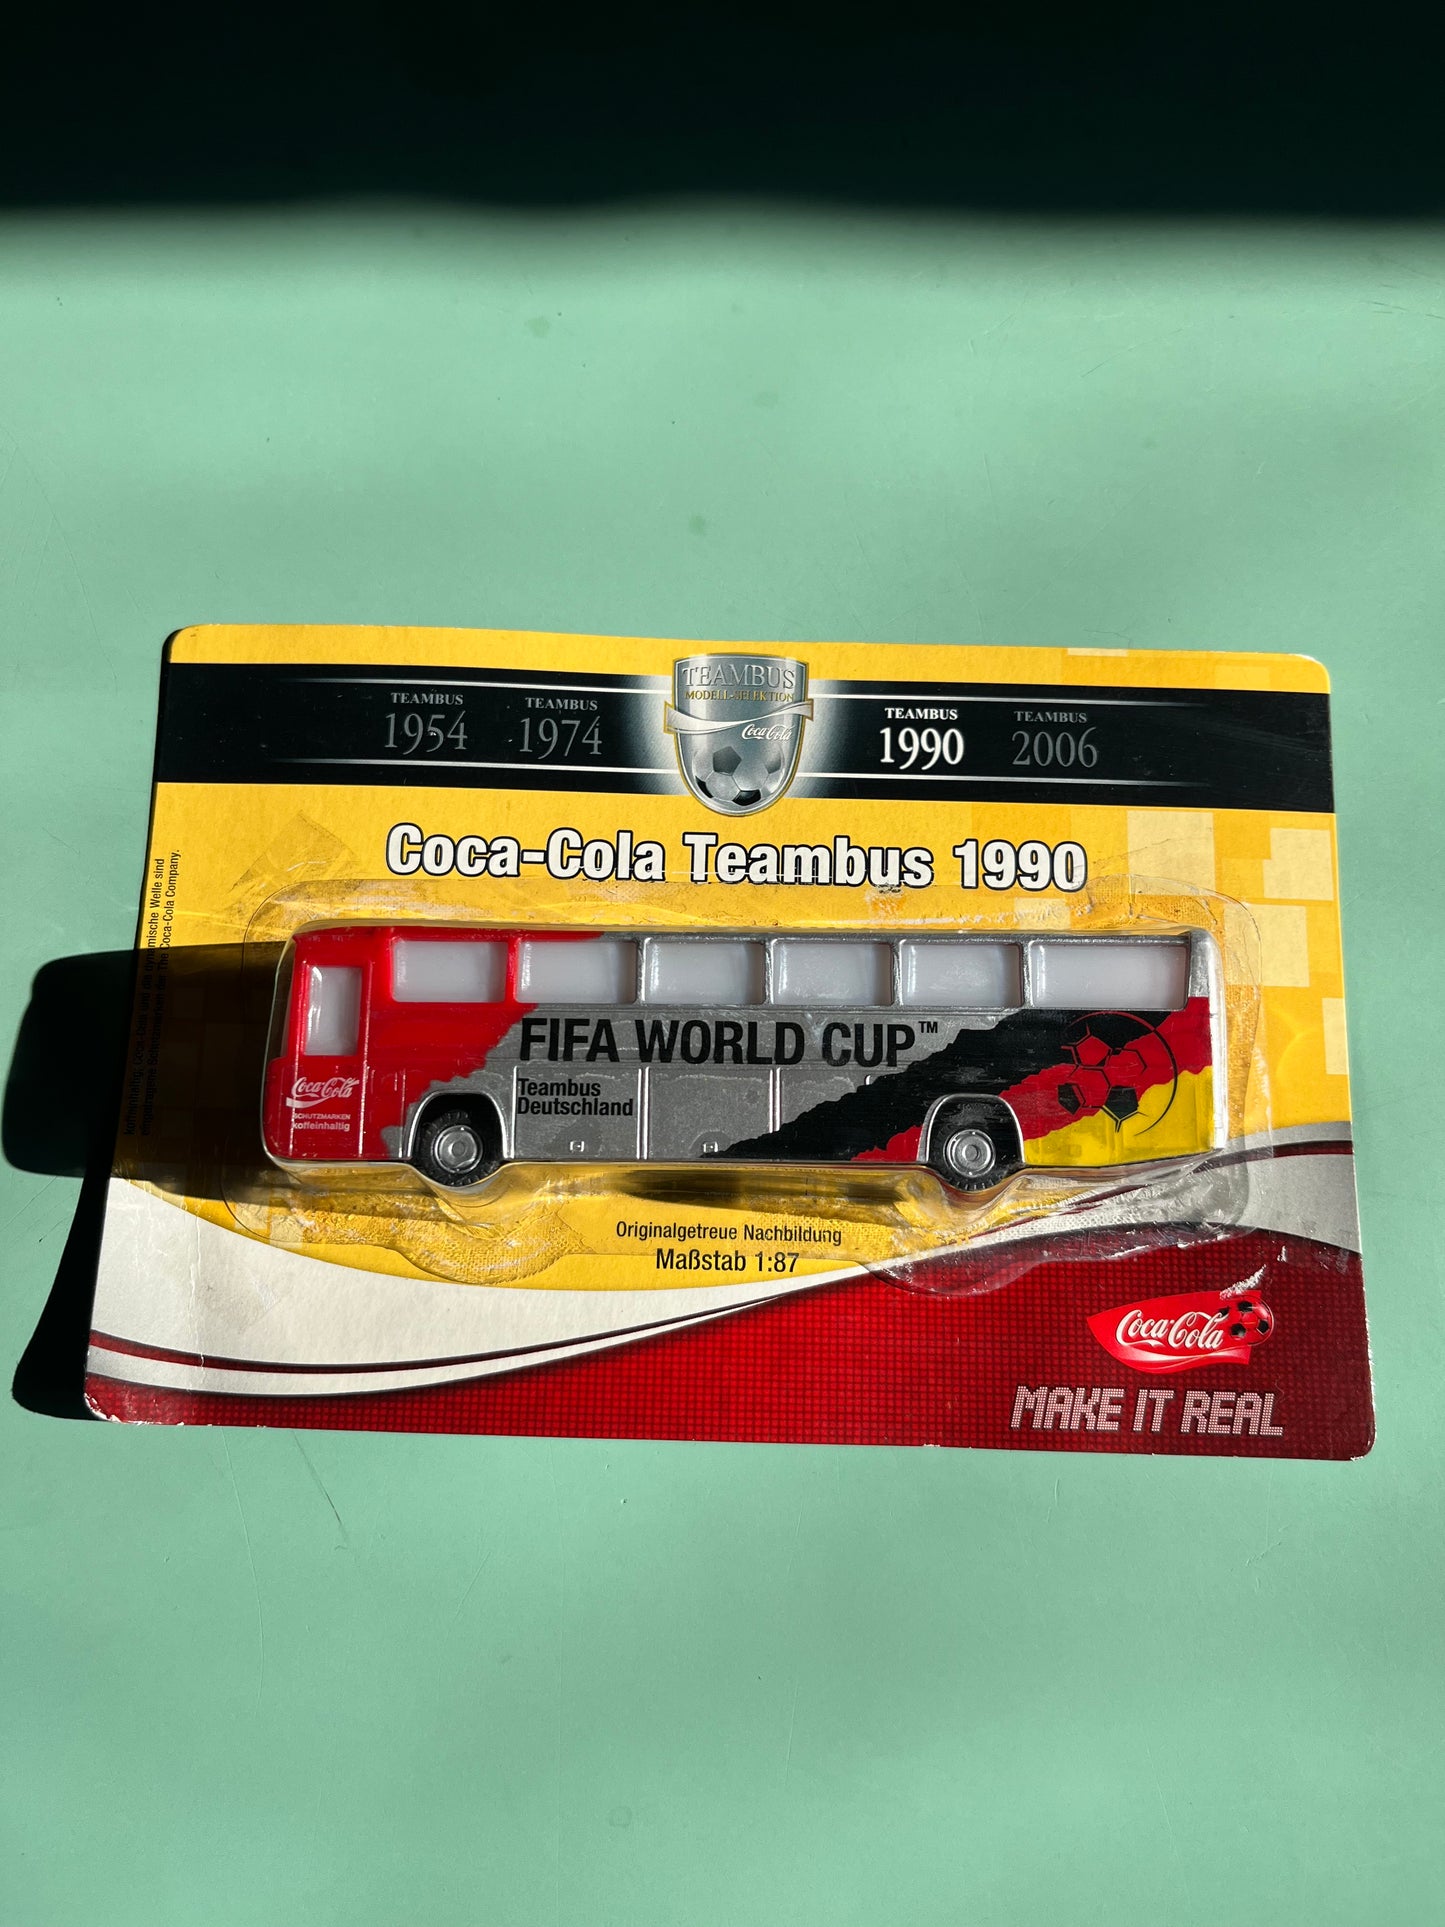 Coca-Cola fifa world cup team bus 1990